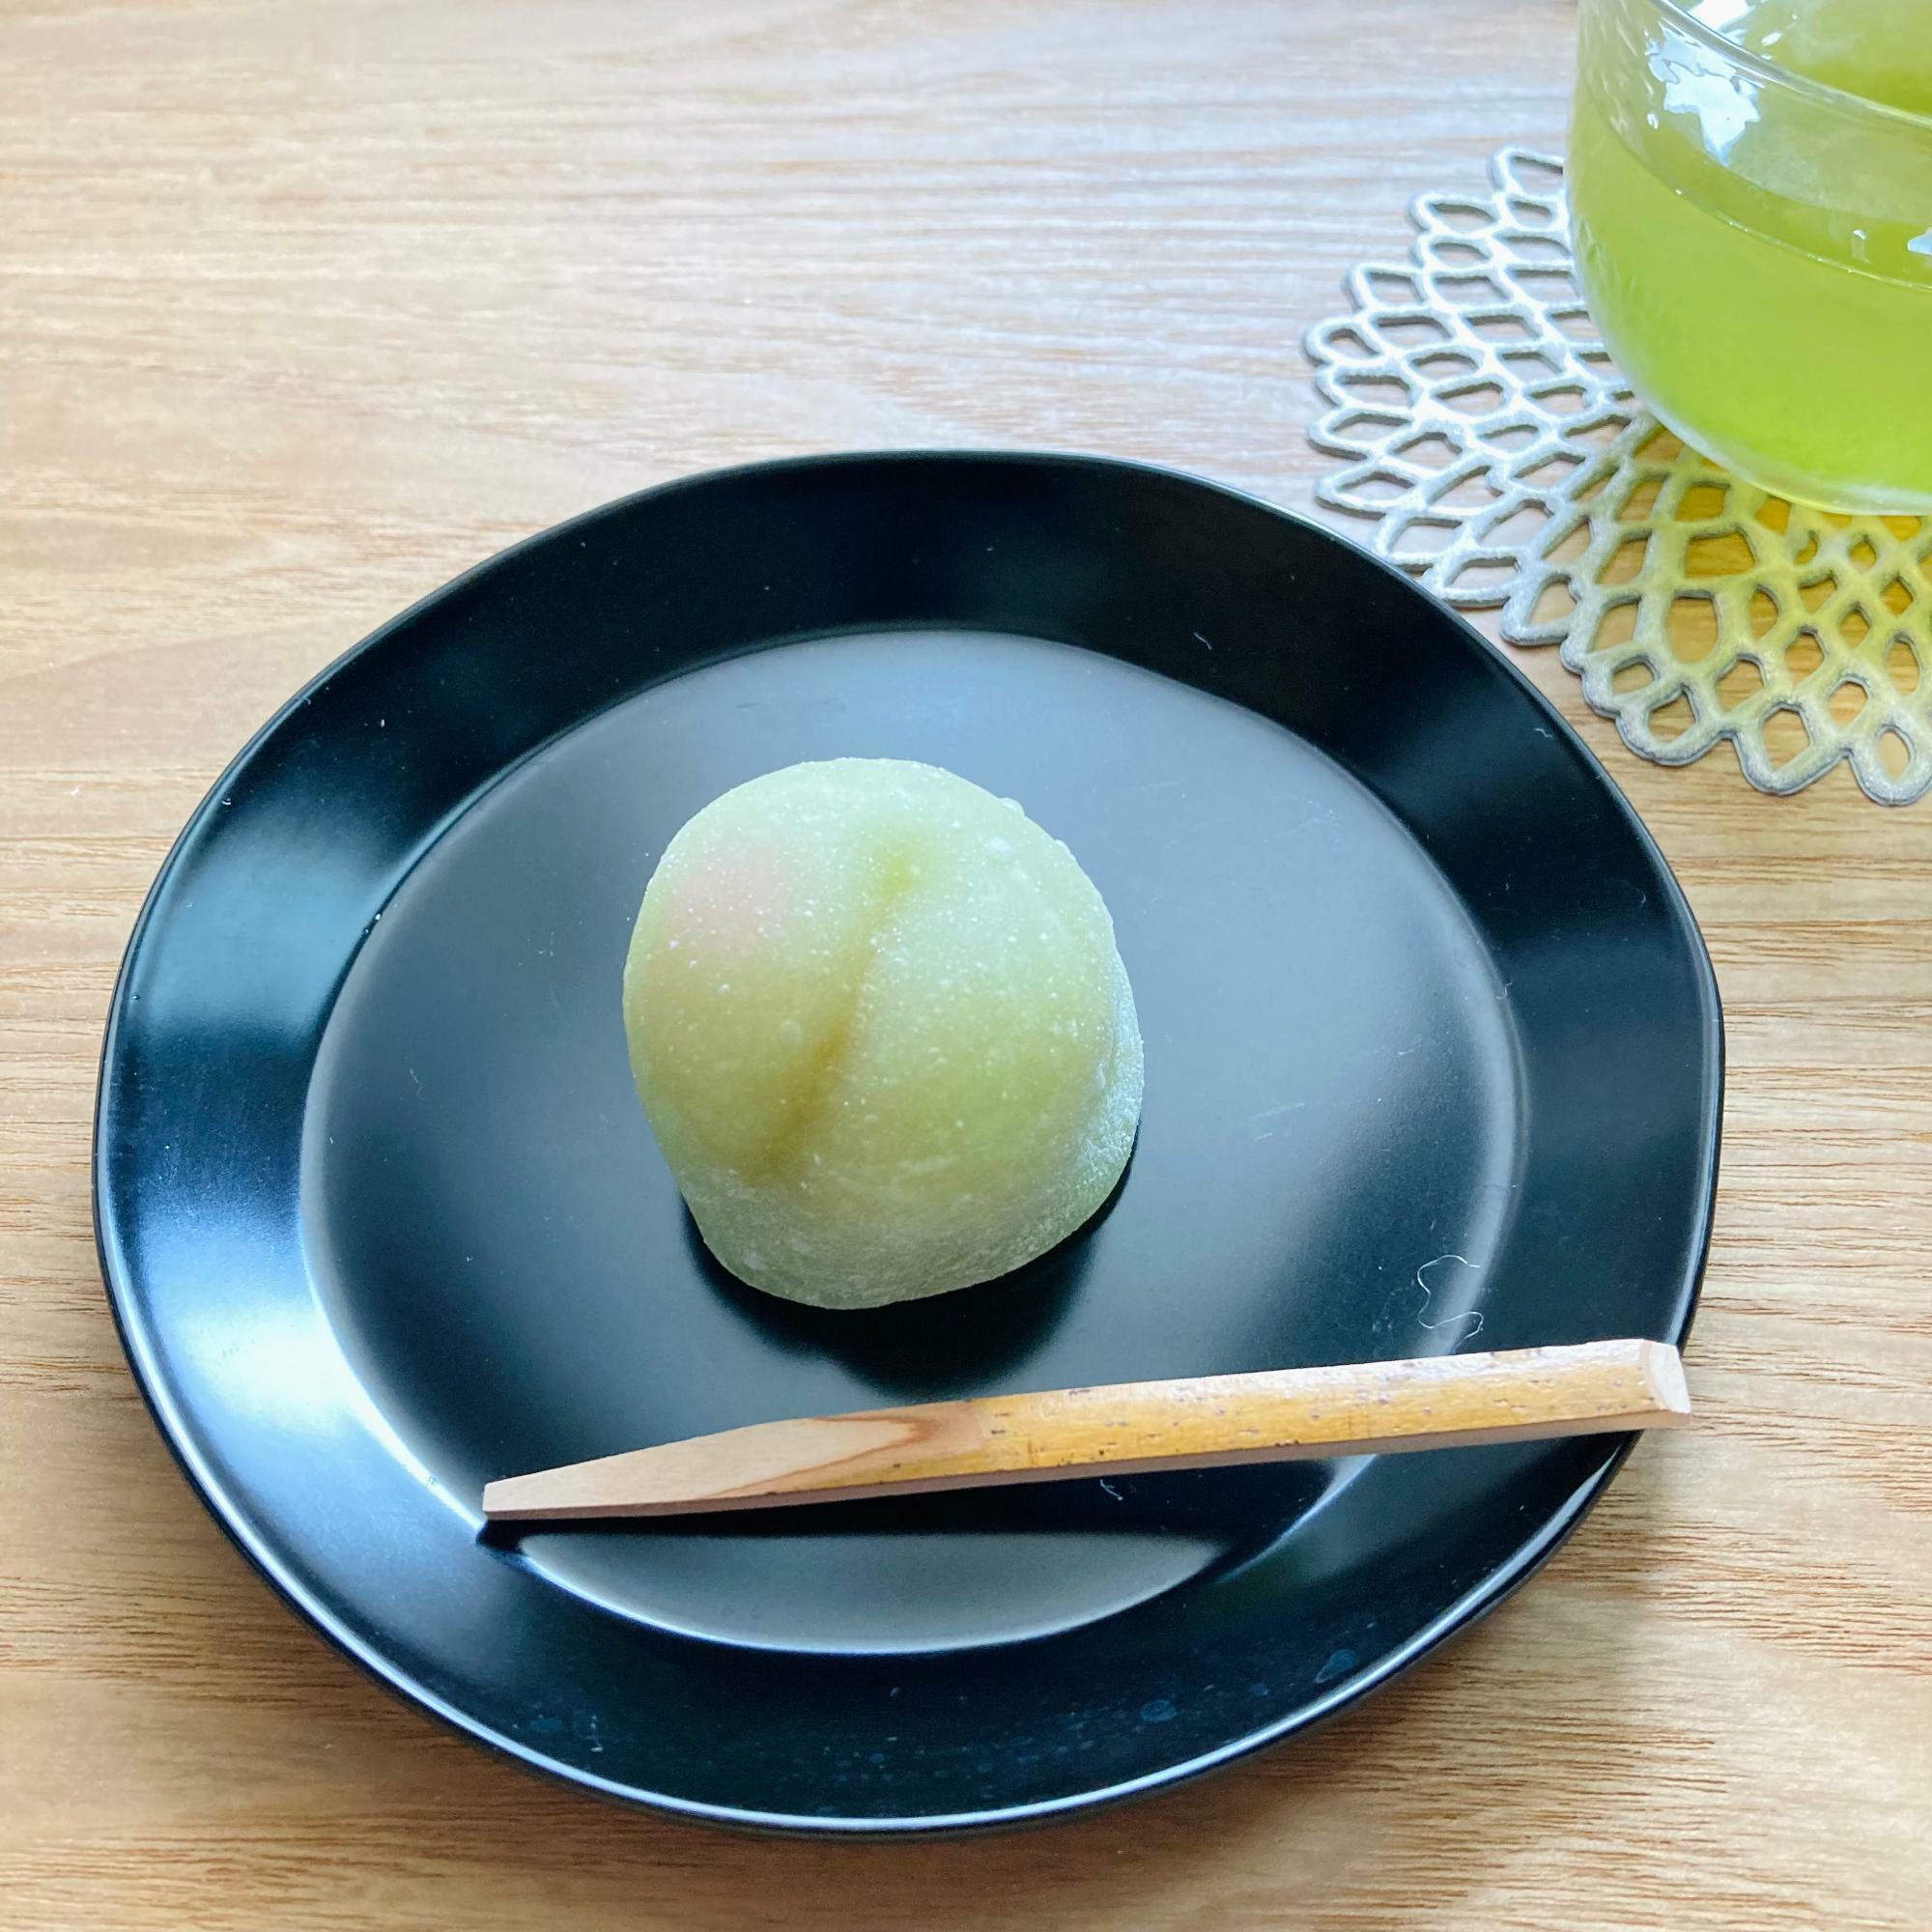 梅の実入りの和菓子「青梅」（田園調布あけぼの）。白あんの中のほんのりとした梅の甘酸っぱさが冷煎茶にもよく合います